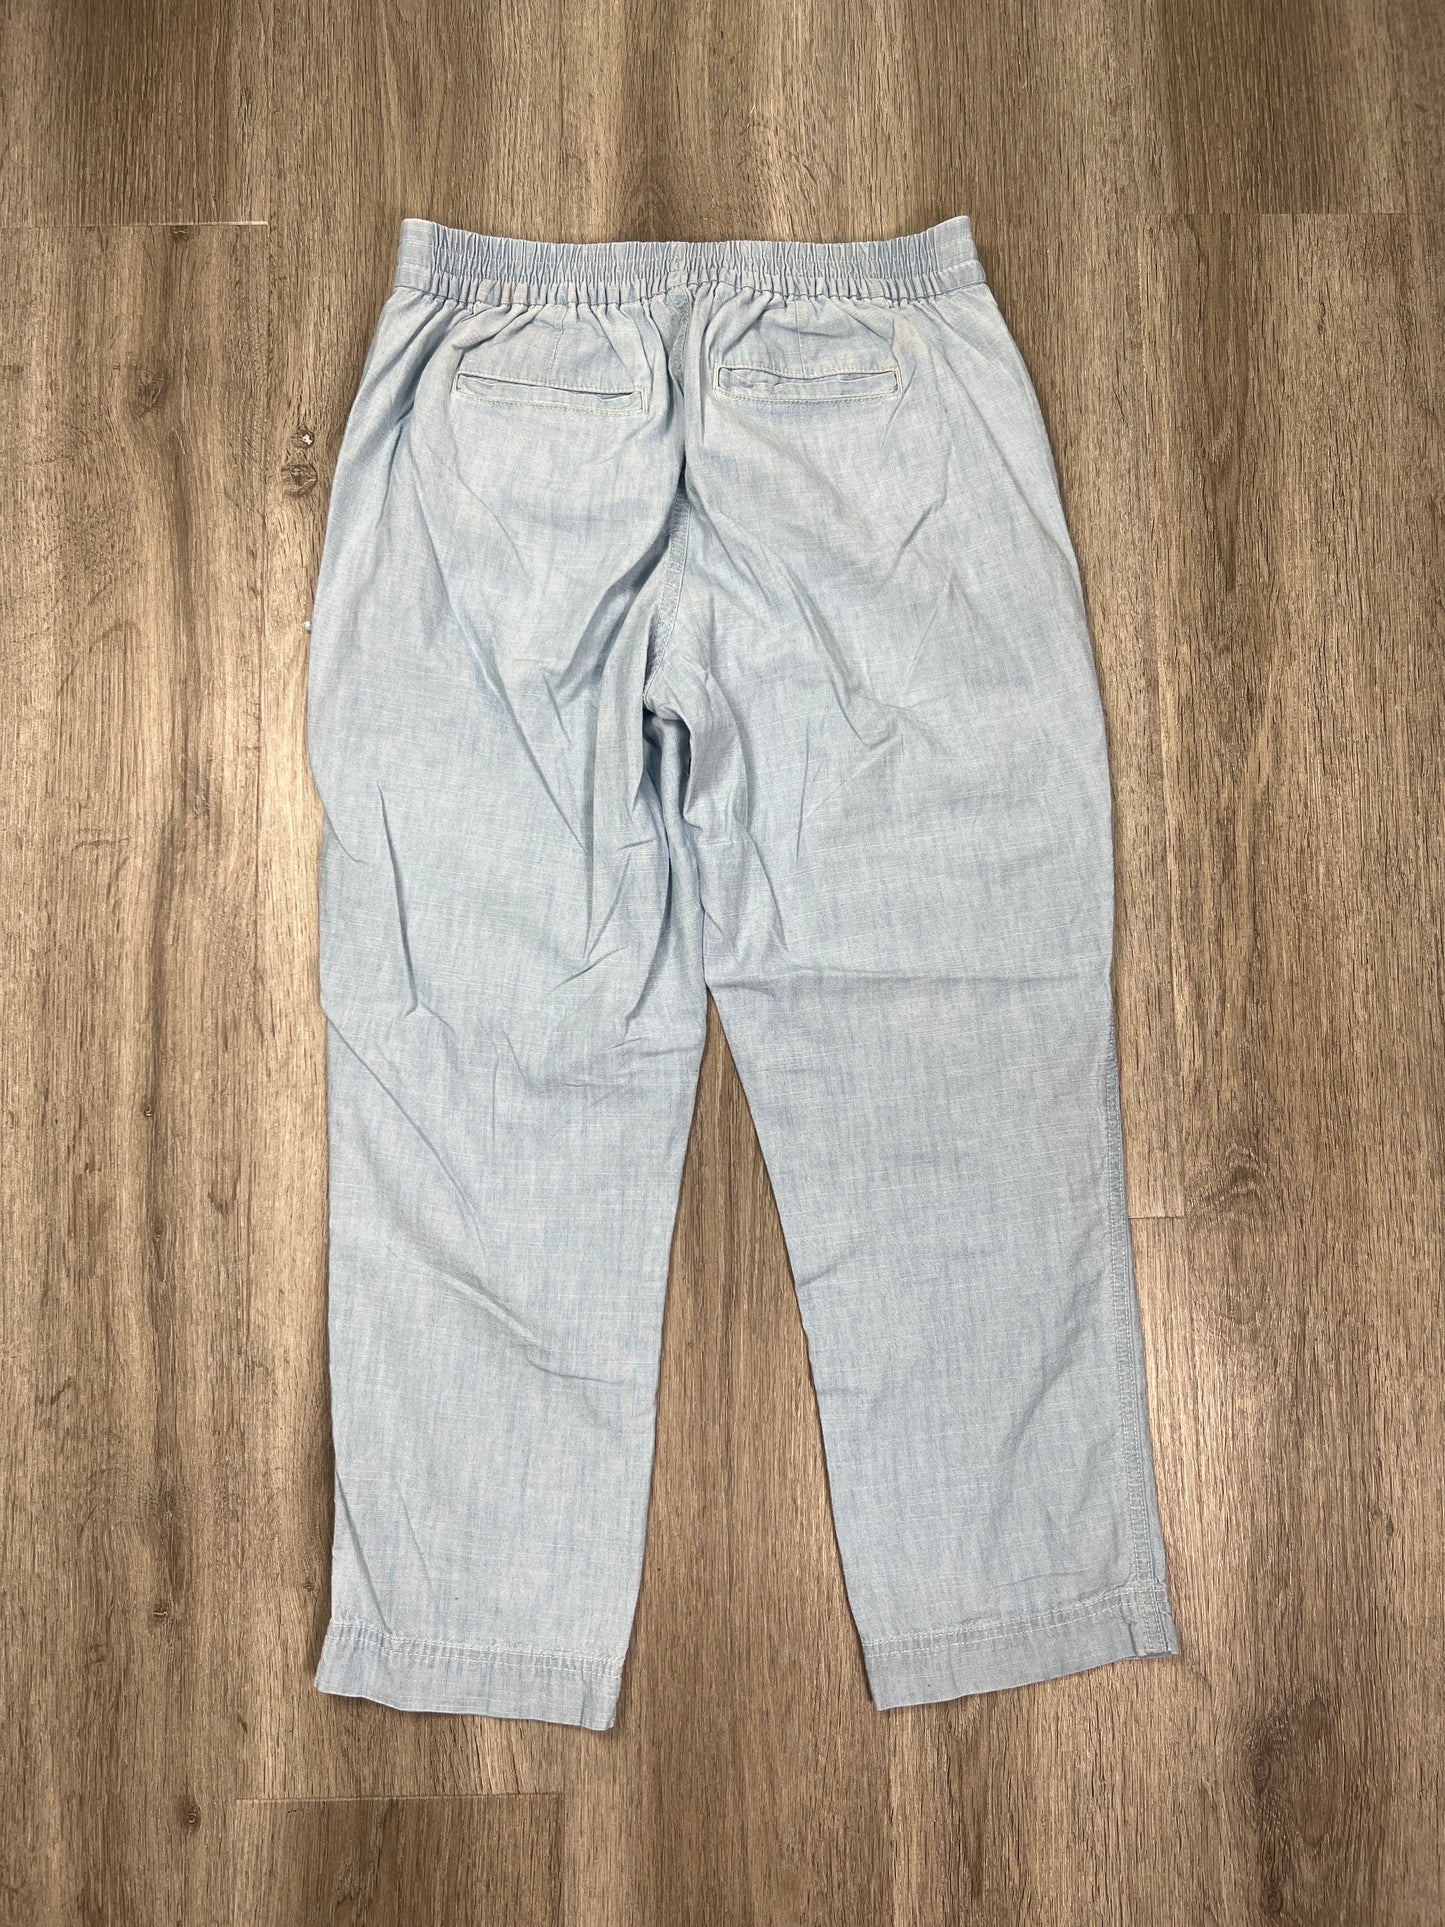 Blue Denim Pants Cropped J. Crew, Size Xs